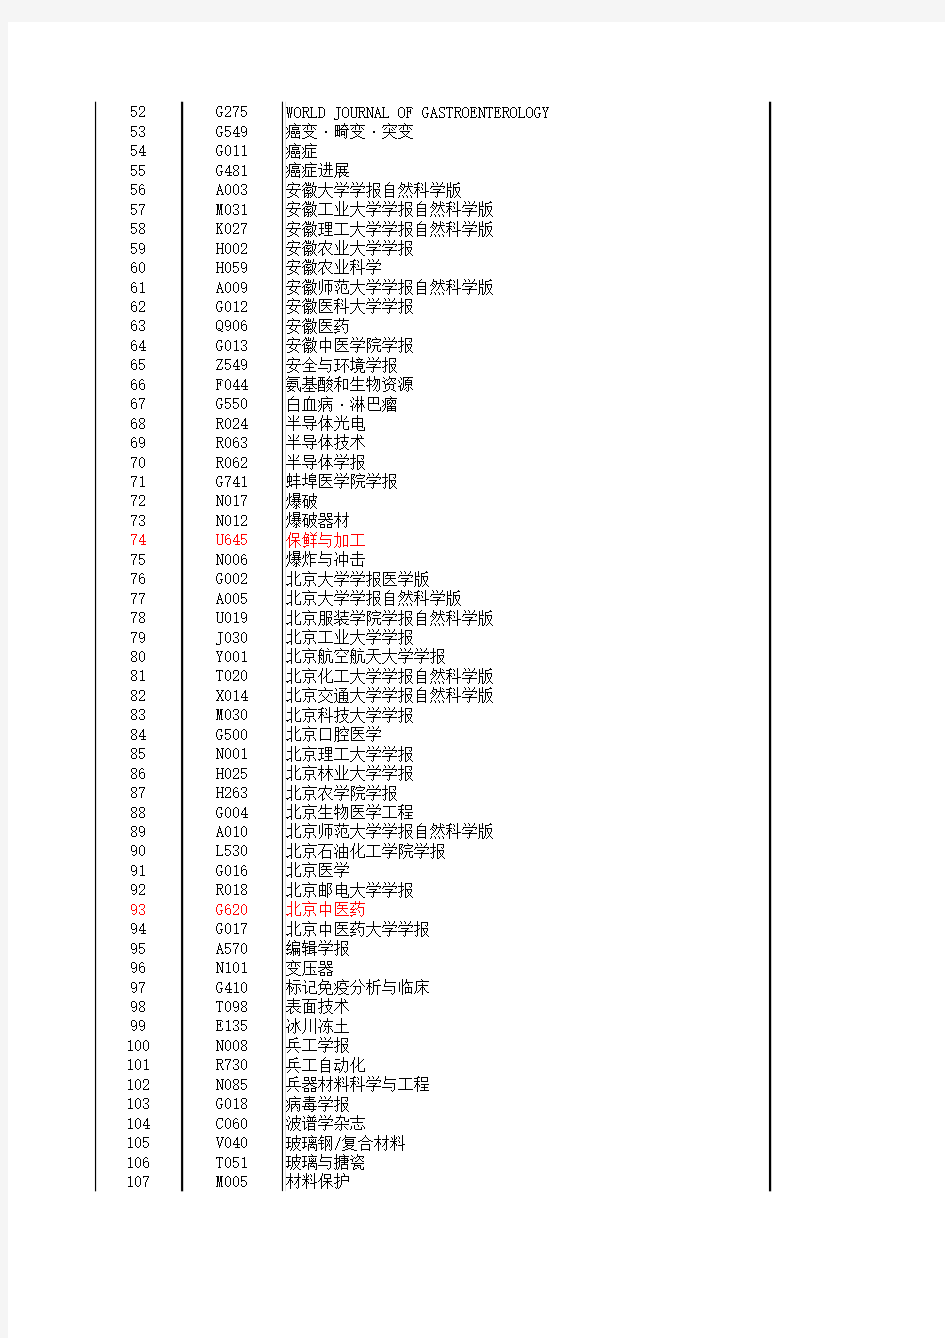 2008年中国科技论文统计源期刊目录(2009年版,共1867种)